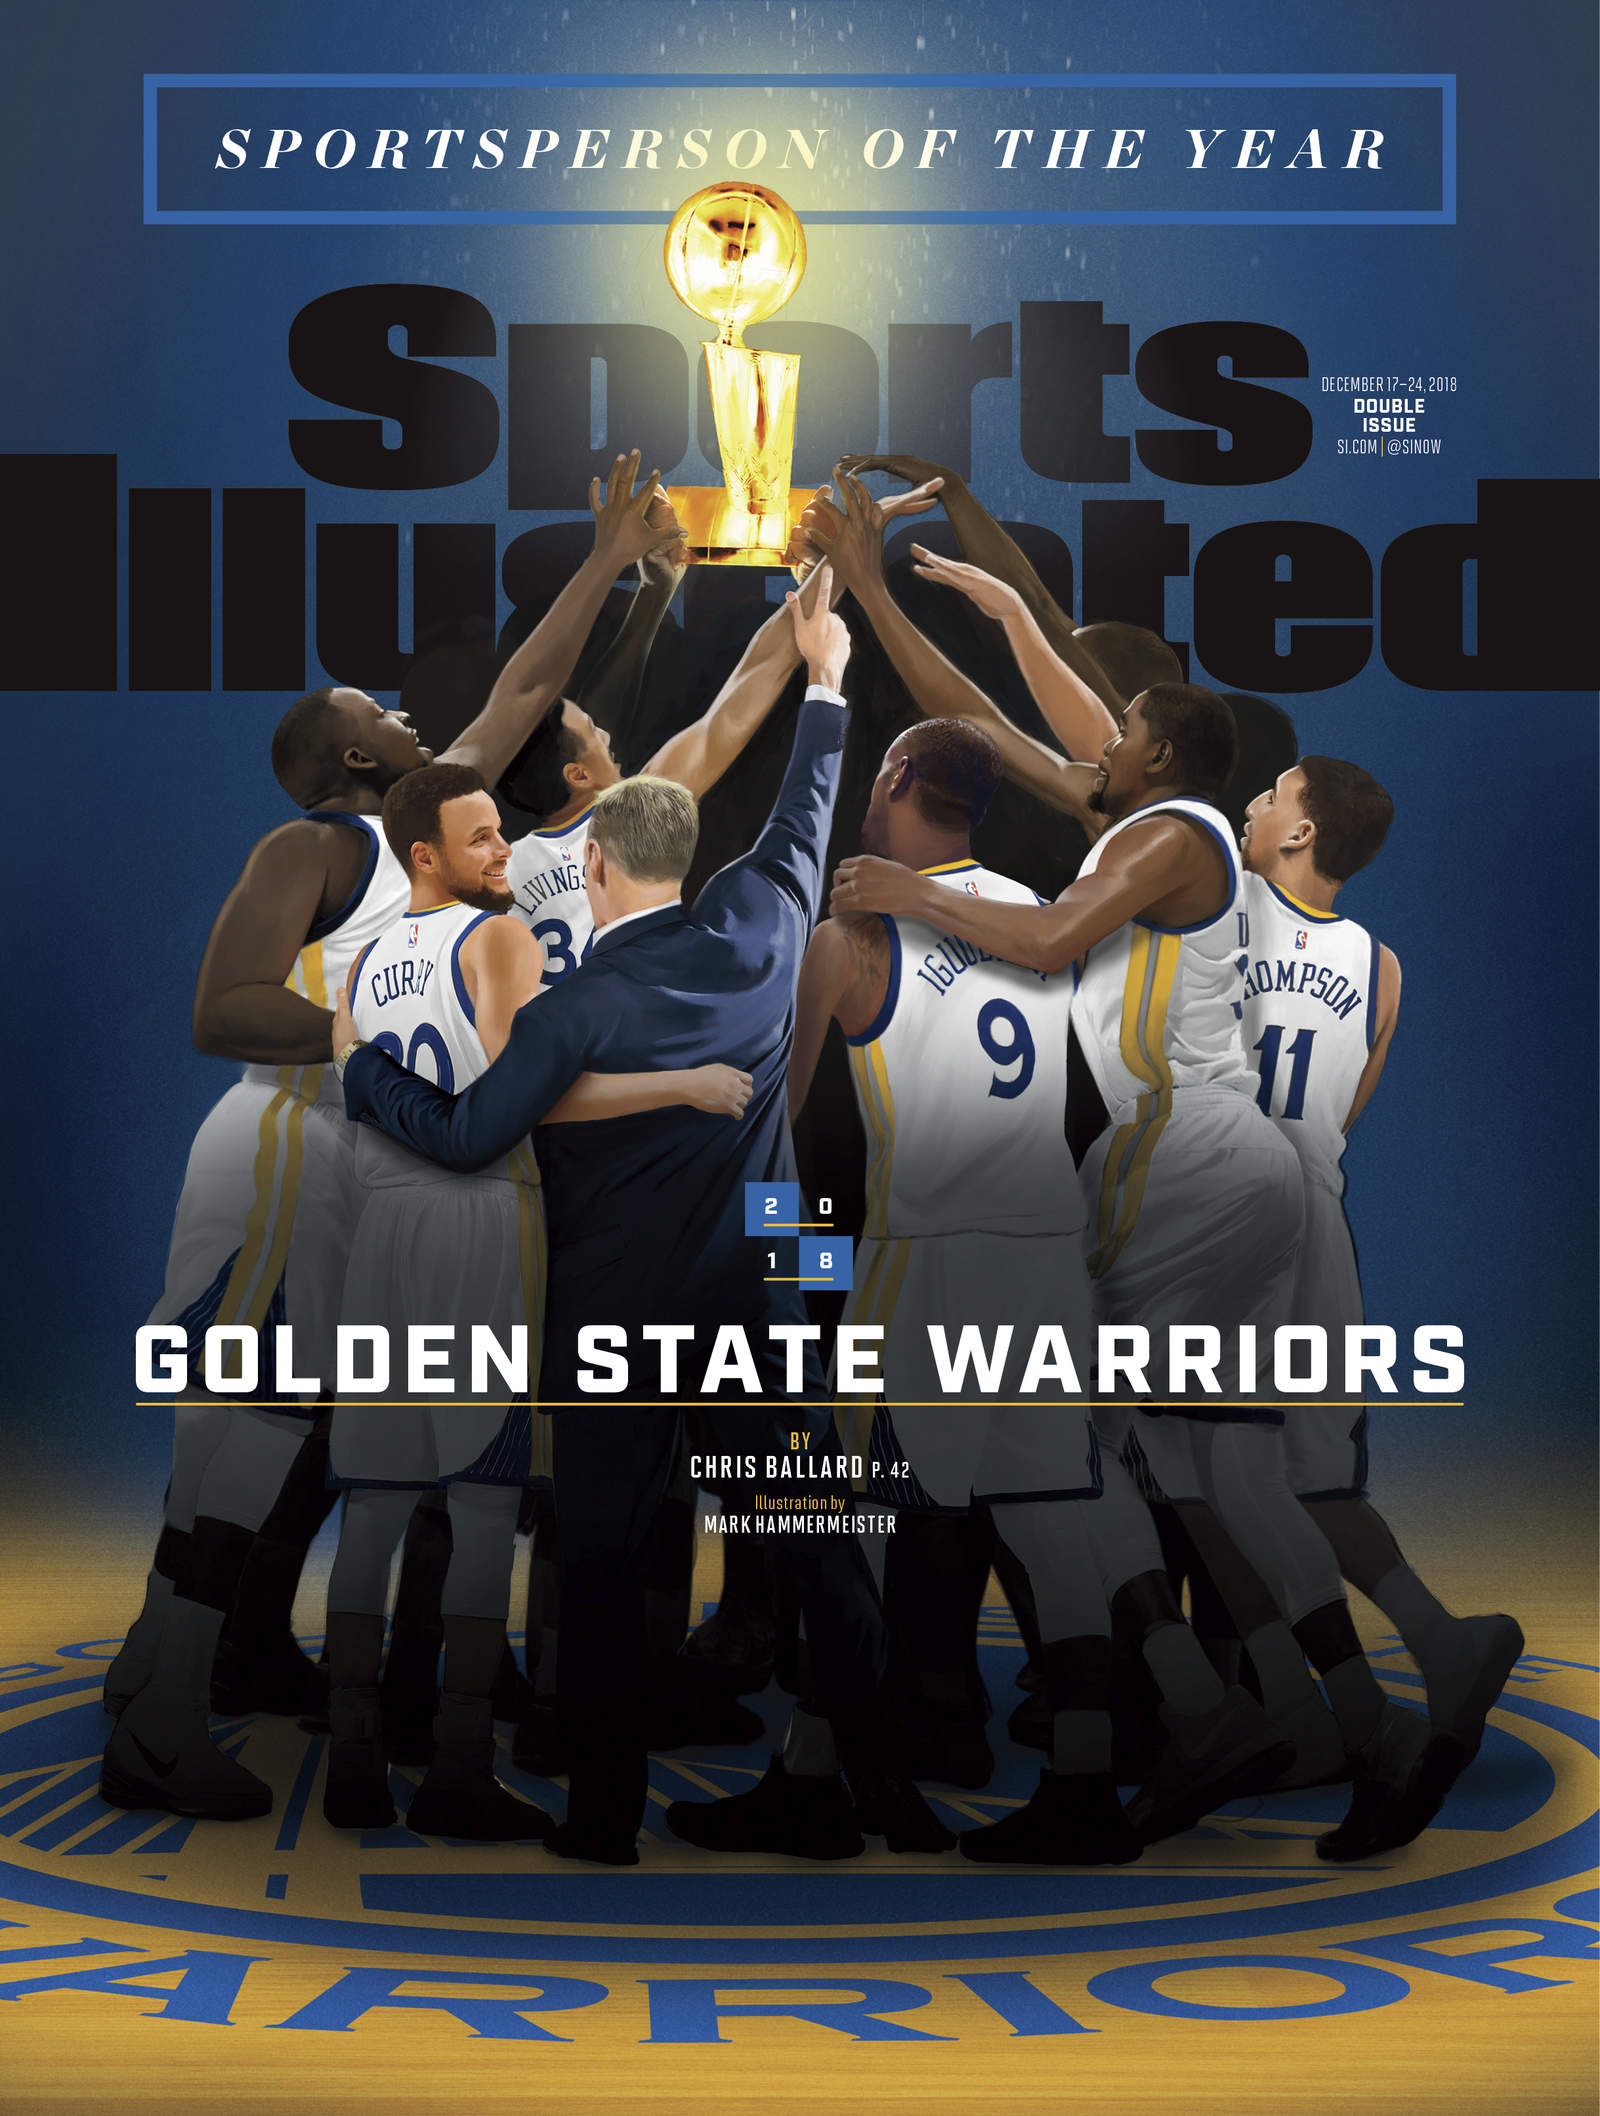 Portada de la revista Sports Illustrated de la edición sobre el Deportista del Año, los Warriors de Golden State. (Especial)